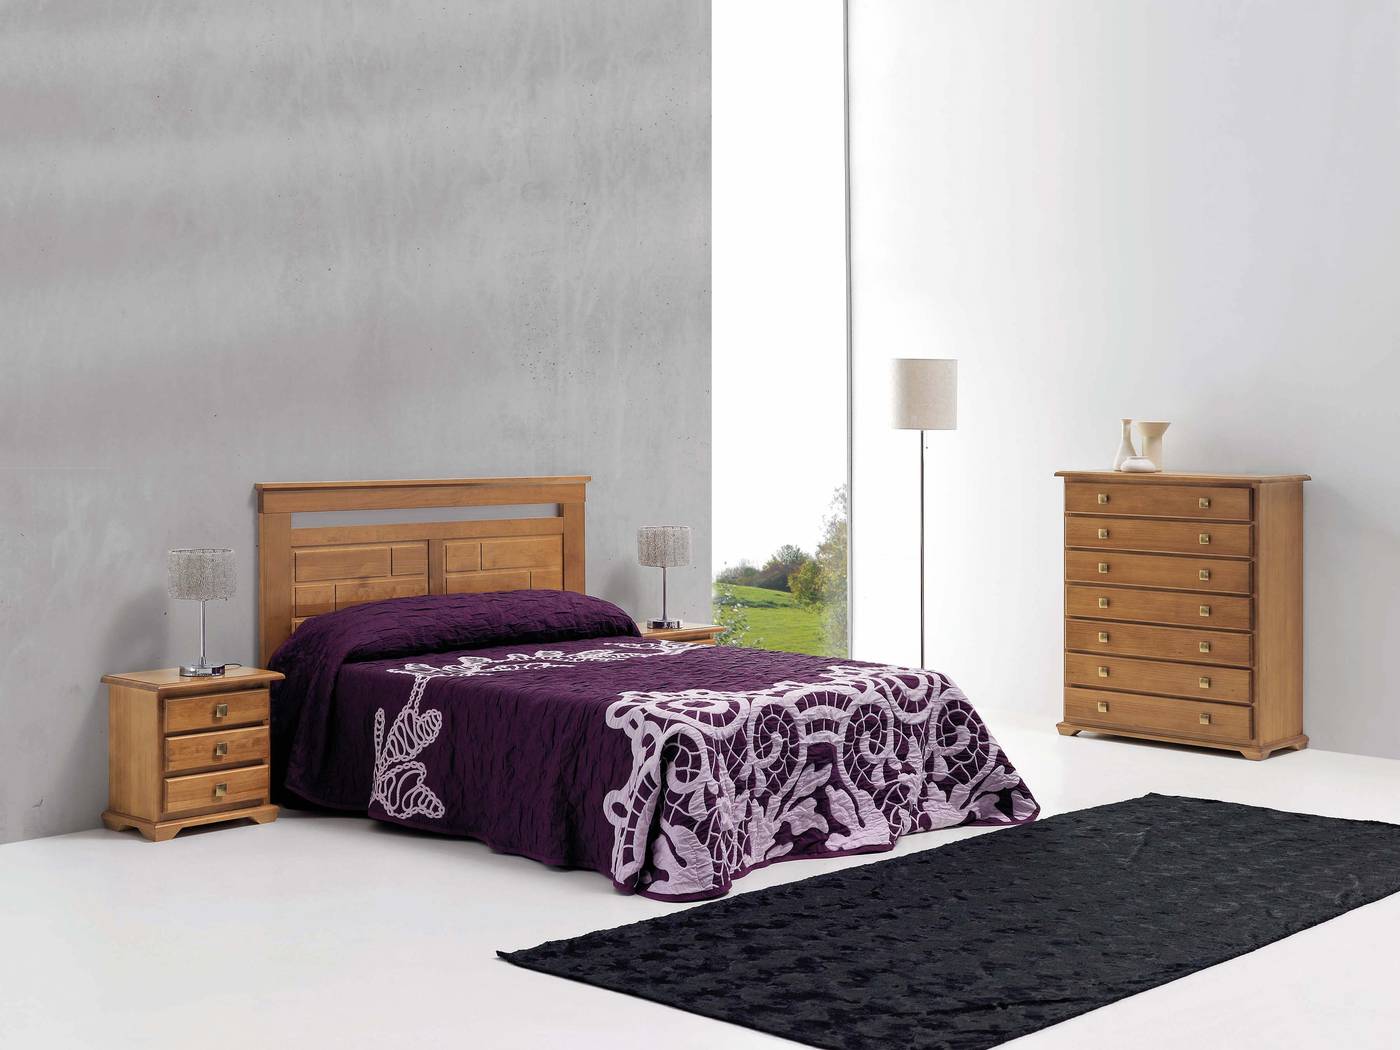 Cabezal Maya Hueco Superior - Cabezal para cama disponible en varias medidas y colores diferentes